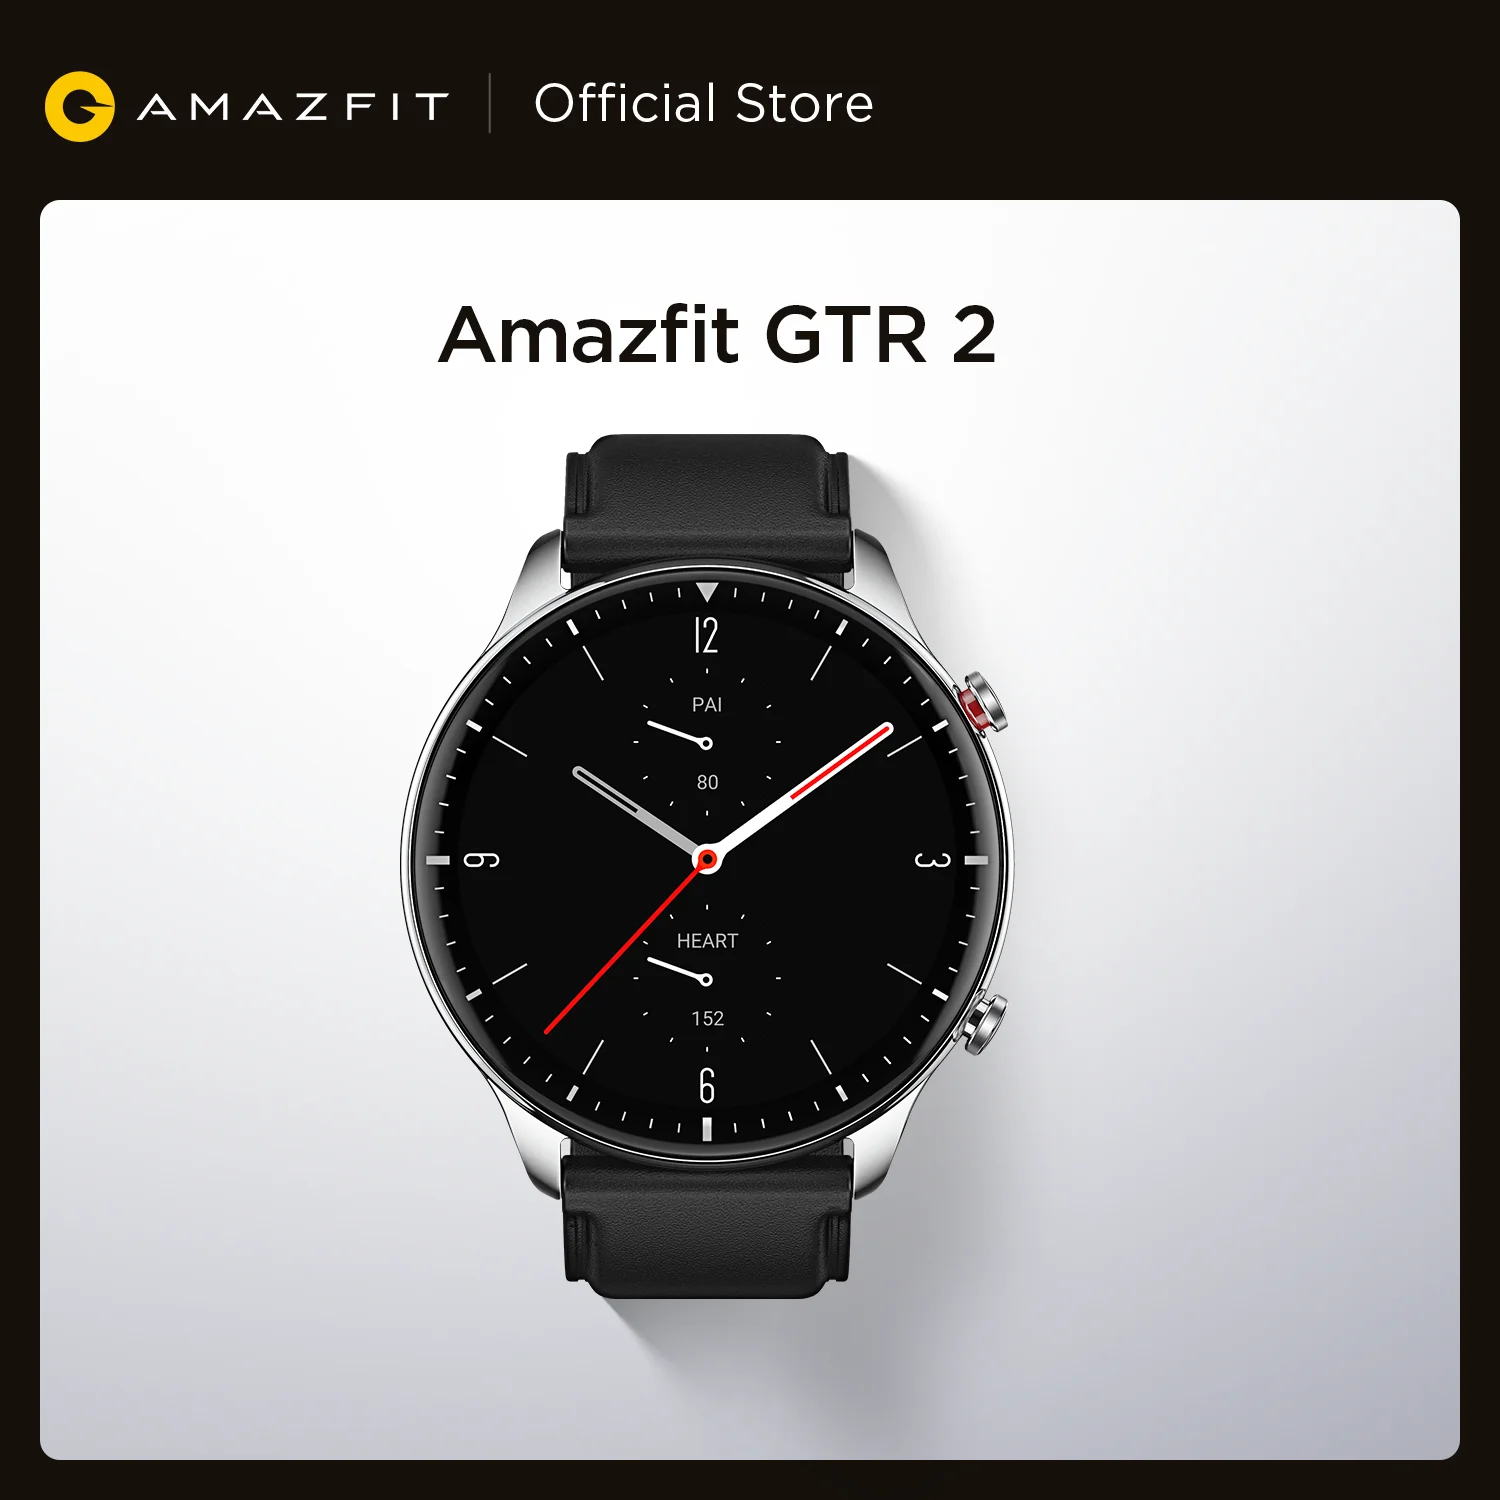  Оригинальный Amazfit GTR 2 Smartwatch 326ppi Дисплей музыки 14 дней Срок службы батареи Мониторинг сна Смарт часы для телефонов на Android iOS 